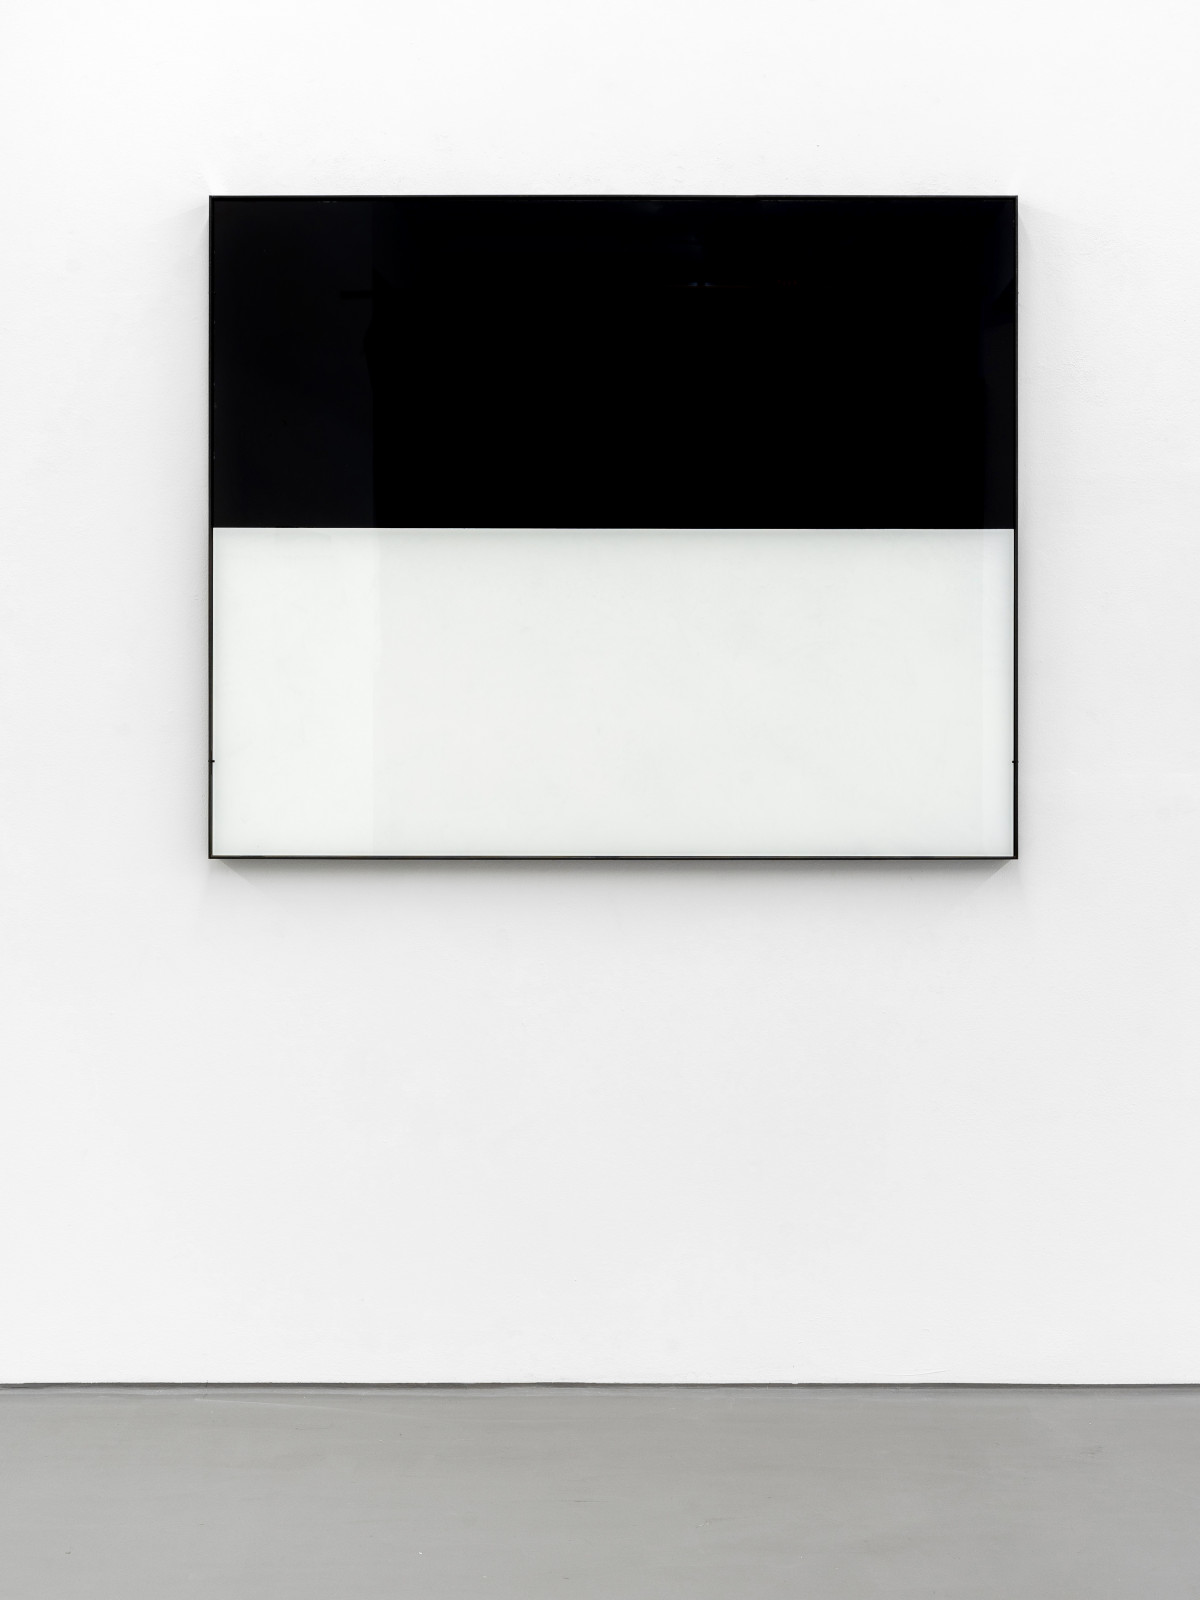 Alberto Garutti, ‘Orizzonte’, 1987-2015, Glass, enamel, iron frame